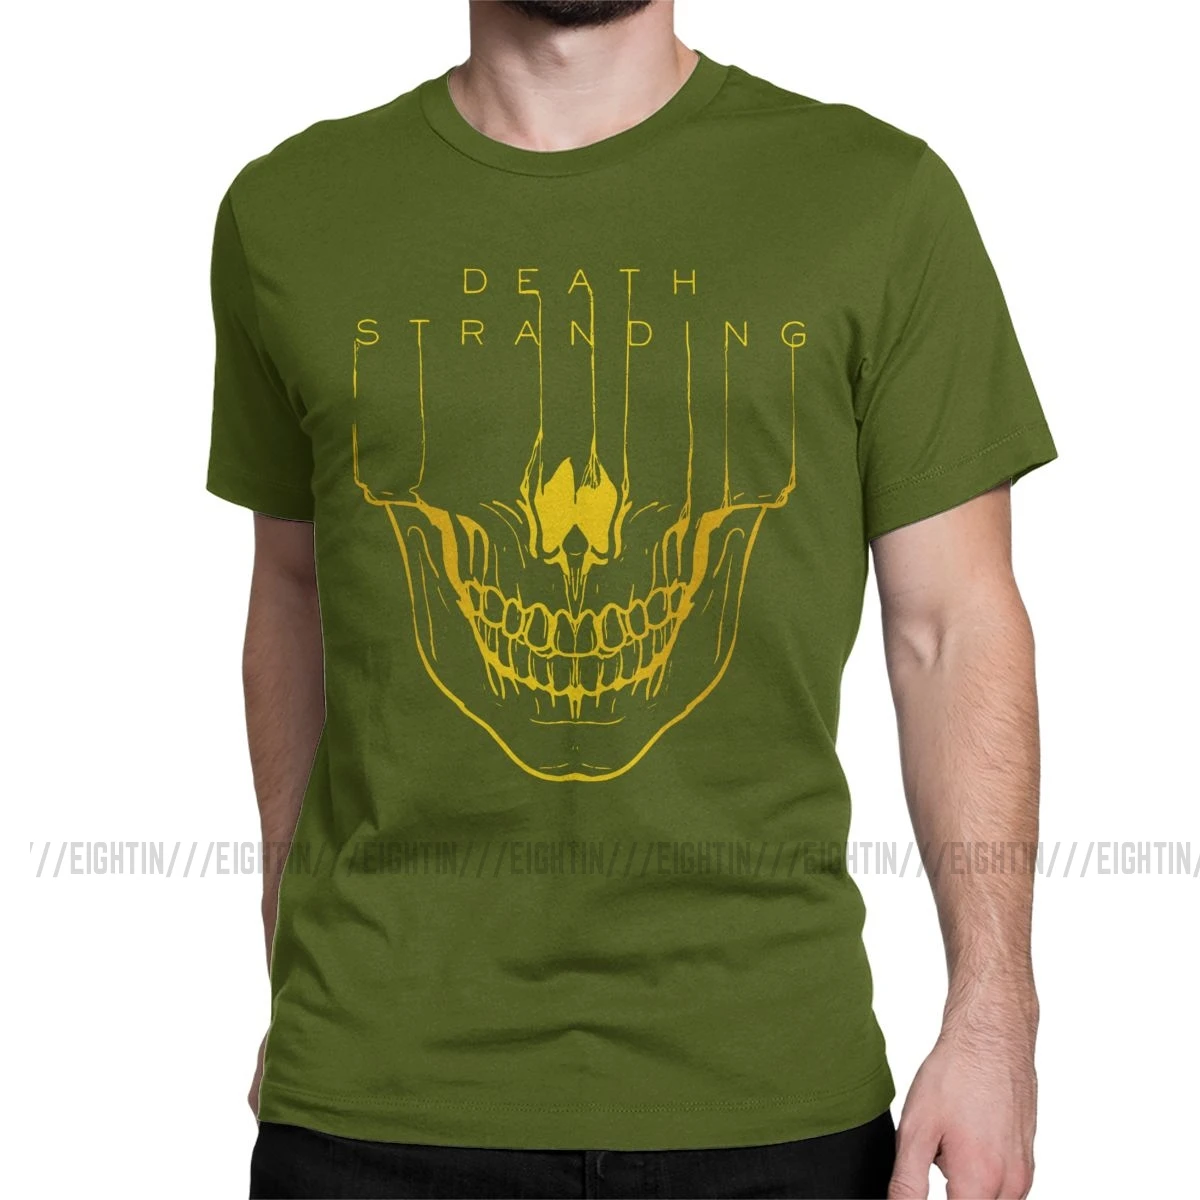 Мужская футболка с надписью "Death Stranding", Кодзима Хидео, металлическая шестерня, одноцветная футболка с коротким рукавом из хлопка с изображением игры "Reedus Norman Game Mgs", 4XL, 5XL, футболка - Цвет: Армейский зеленый